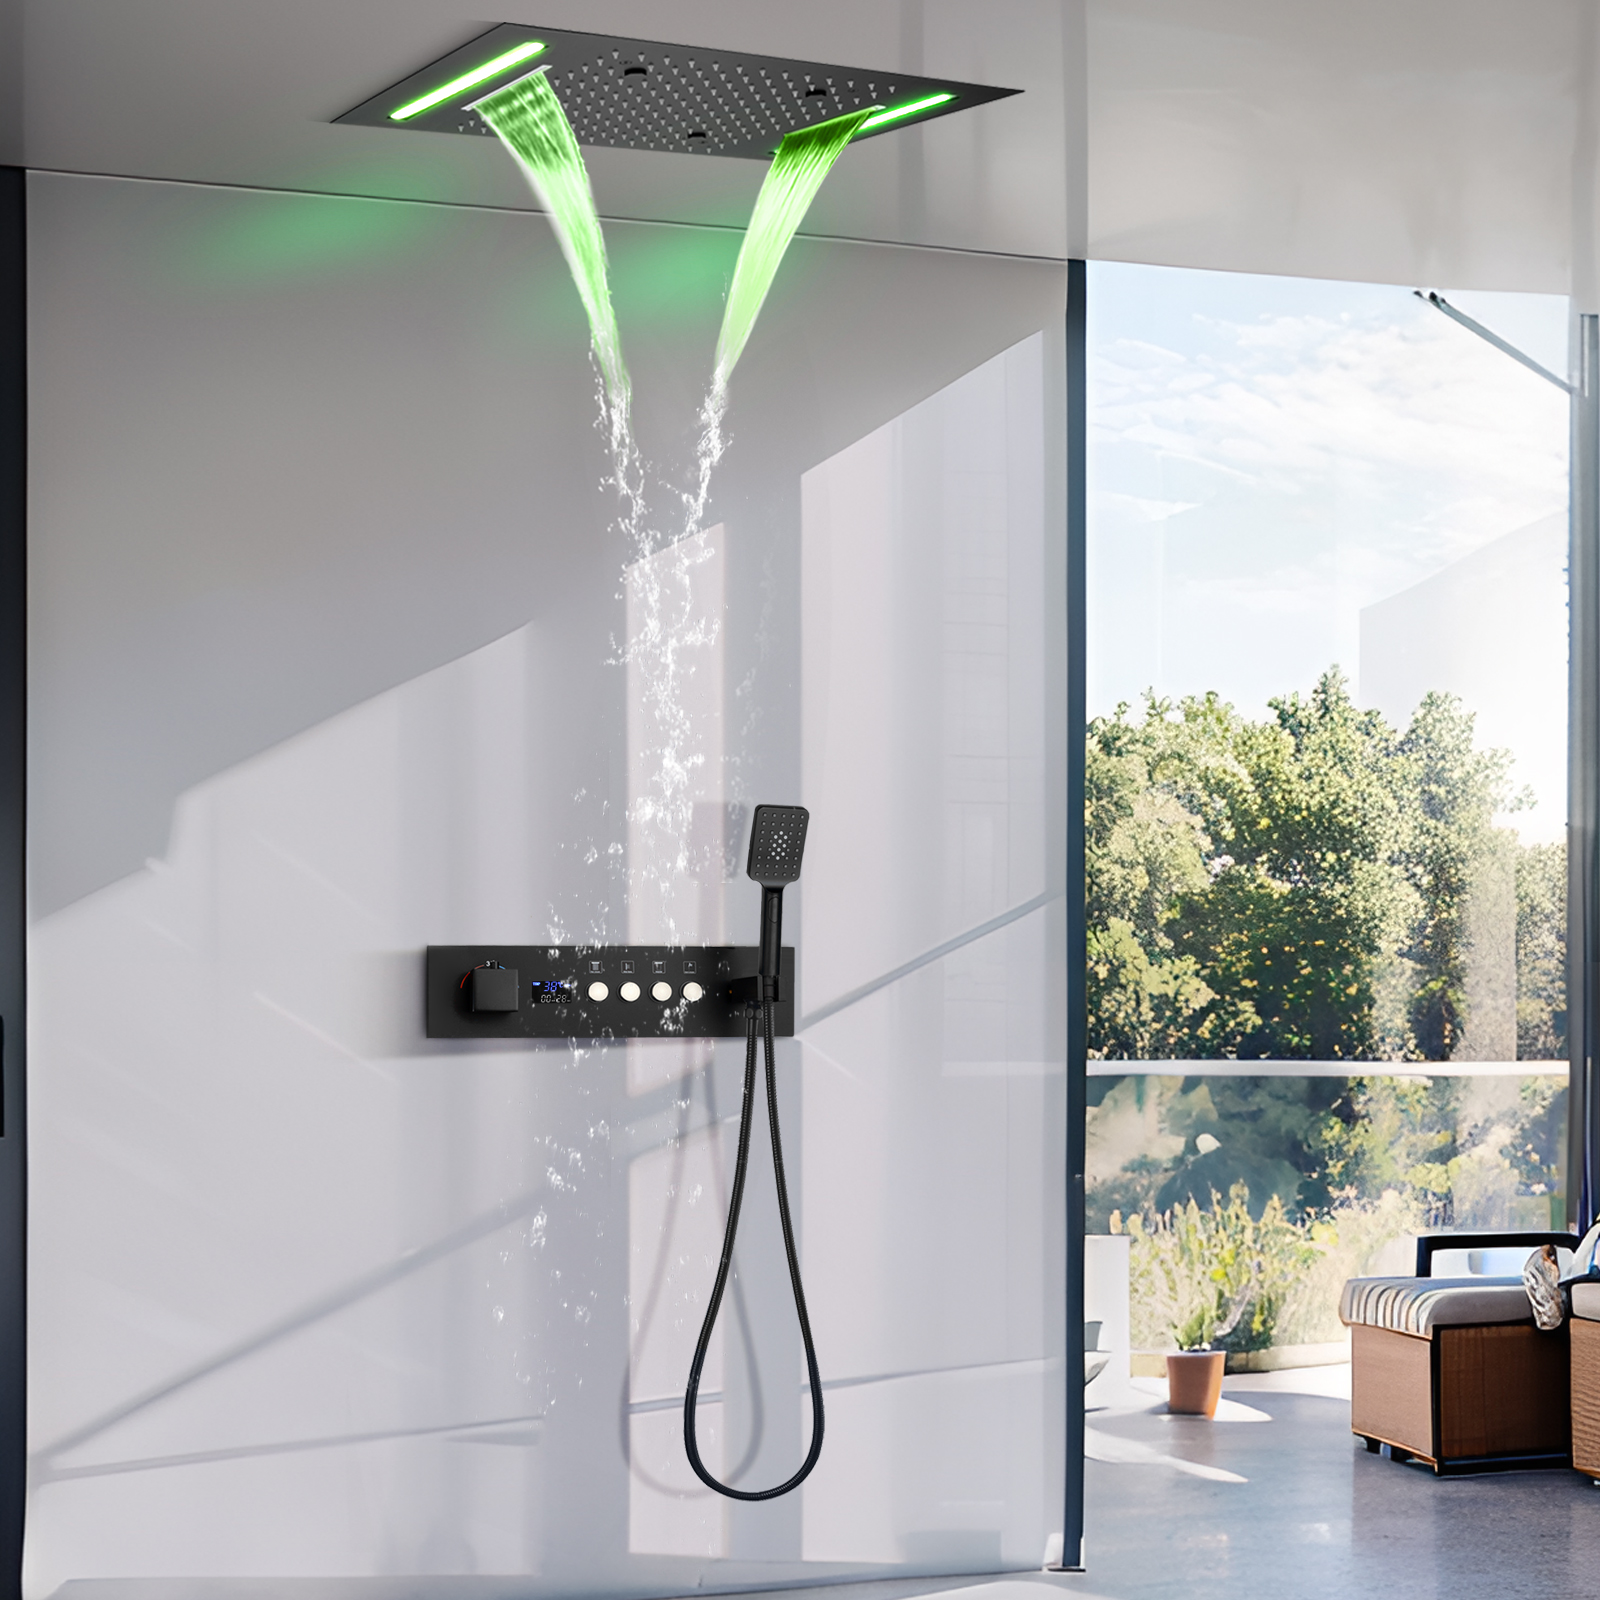 Pantalla LED negra mate, juego de grifo de ducha Digital de temperatura constante, sistema de masaje de ducha de agua de lluvia de 4 funciones